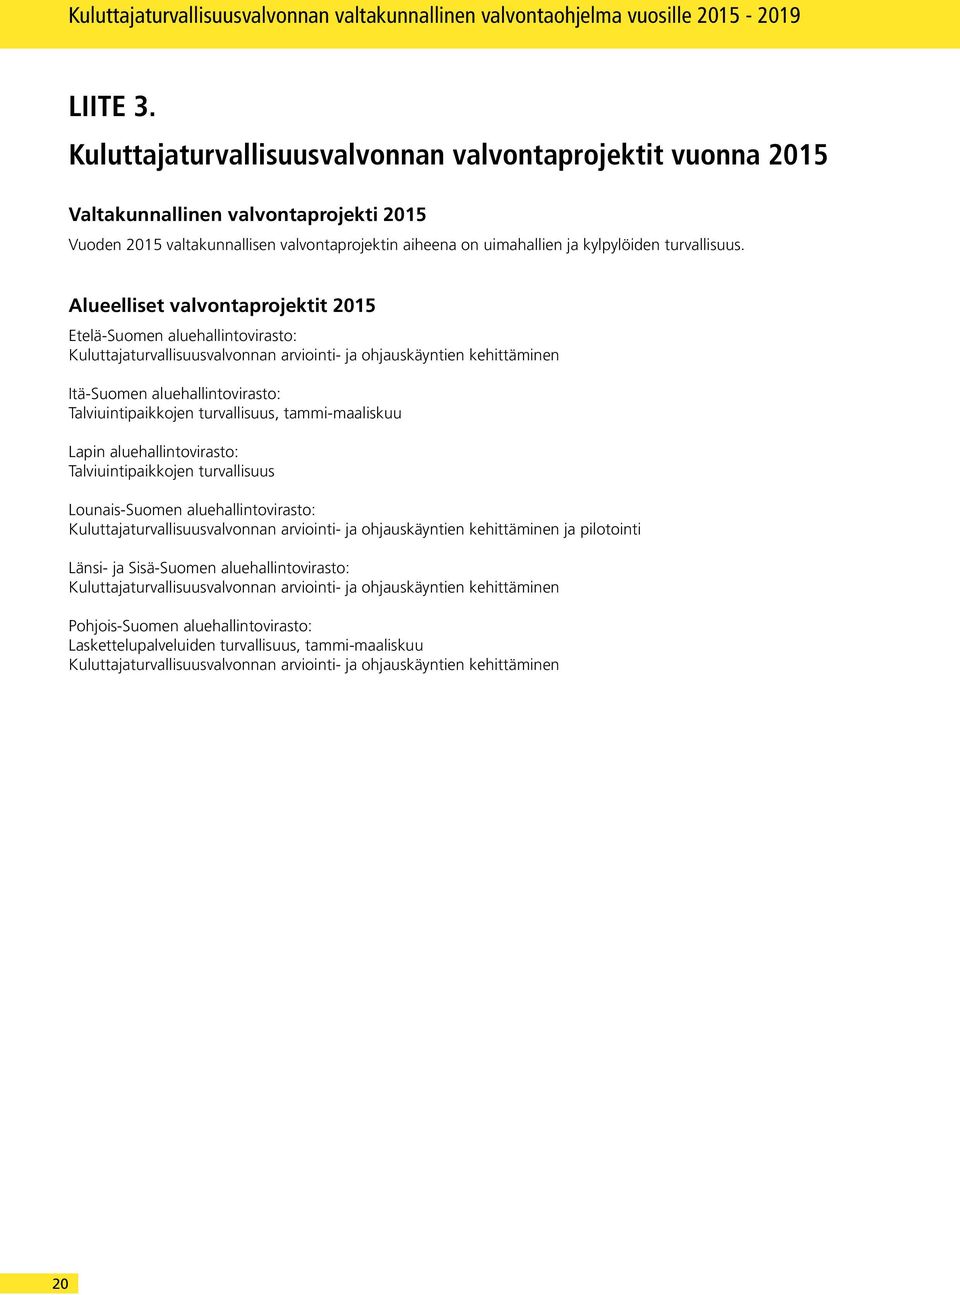 Alueelliset valvontaprojektit 2015 Etelä-Suomen aluehallintovirasto: Kuluttajaturvallisuusvalvonnan arviointi- ja ohjauskäyntien kehittäminen Itä-Suomen aluehallintovirasto: Talviuintipaikkojen